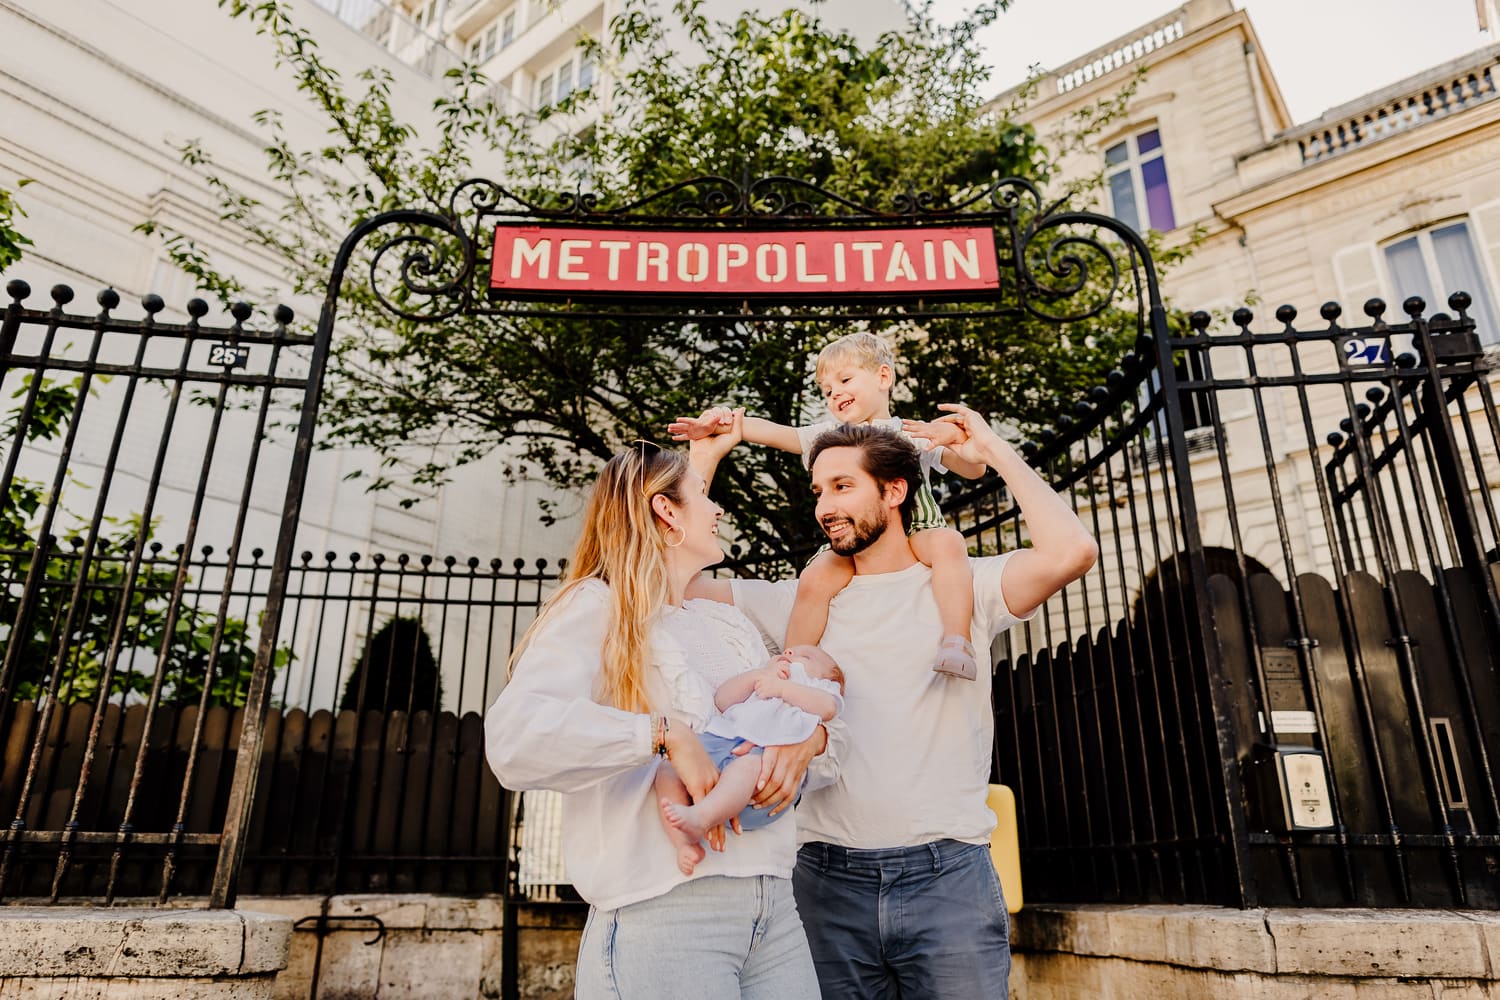 photographe famille paris devant une entree de metro metropolitain dans le 9e arrondissement